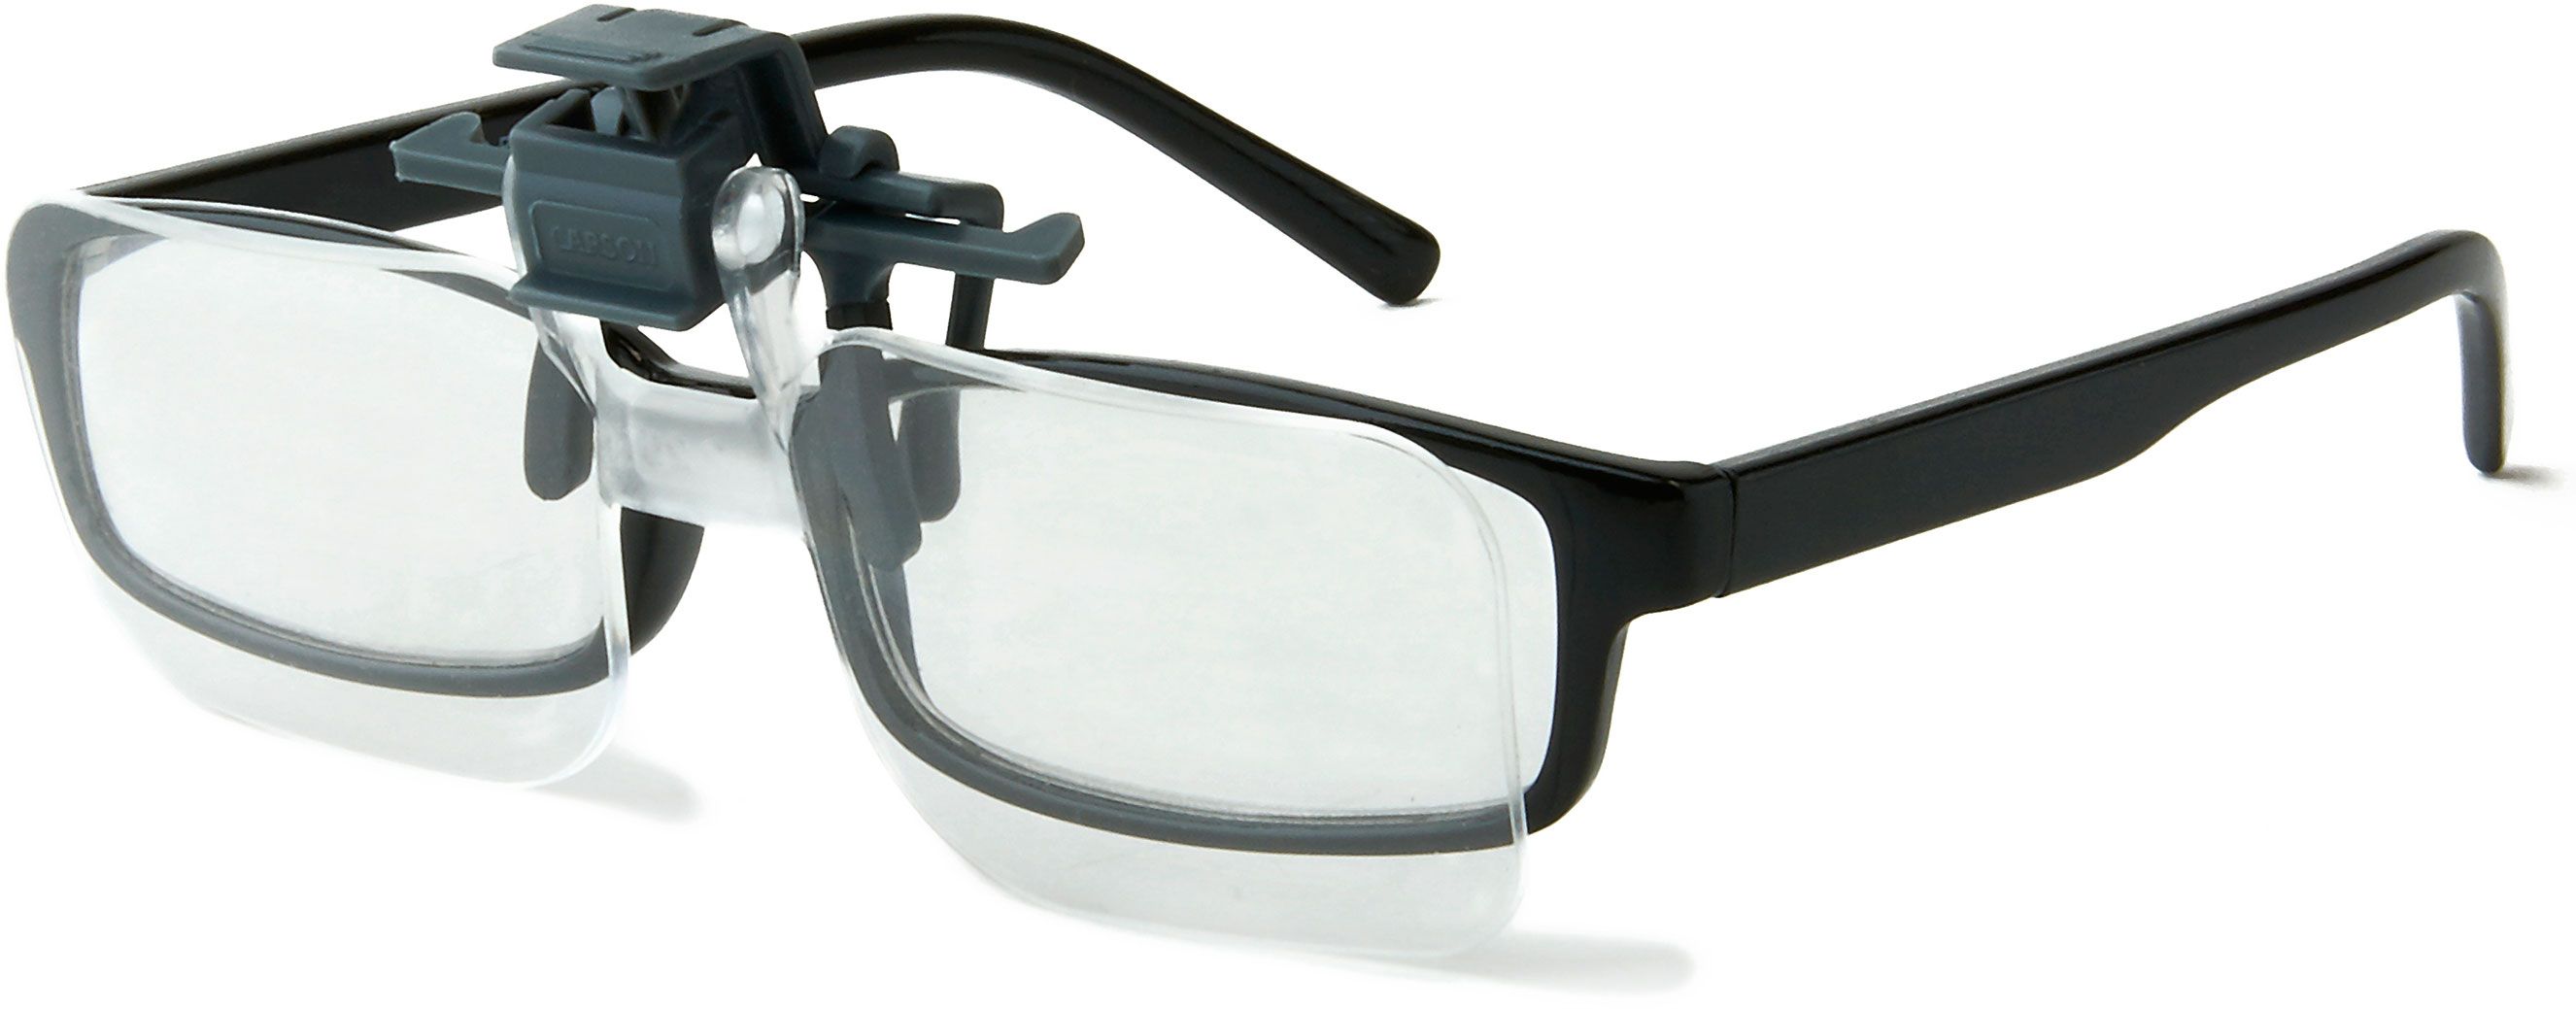 carson clip and flip glasses